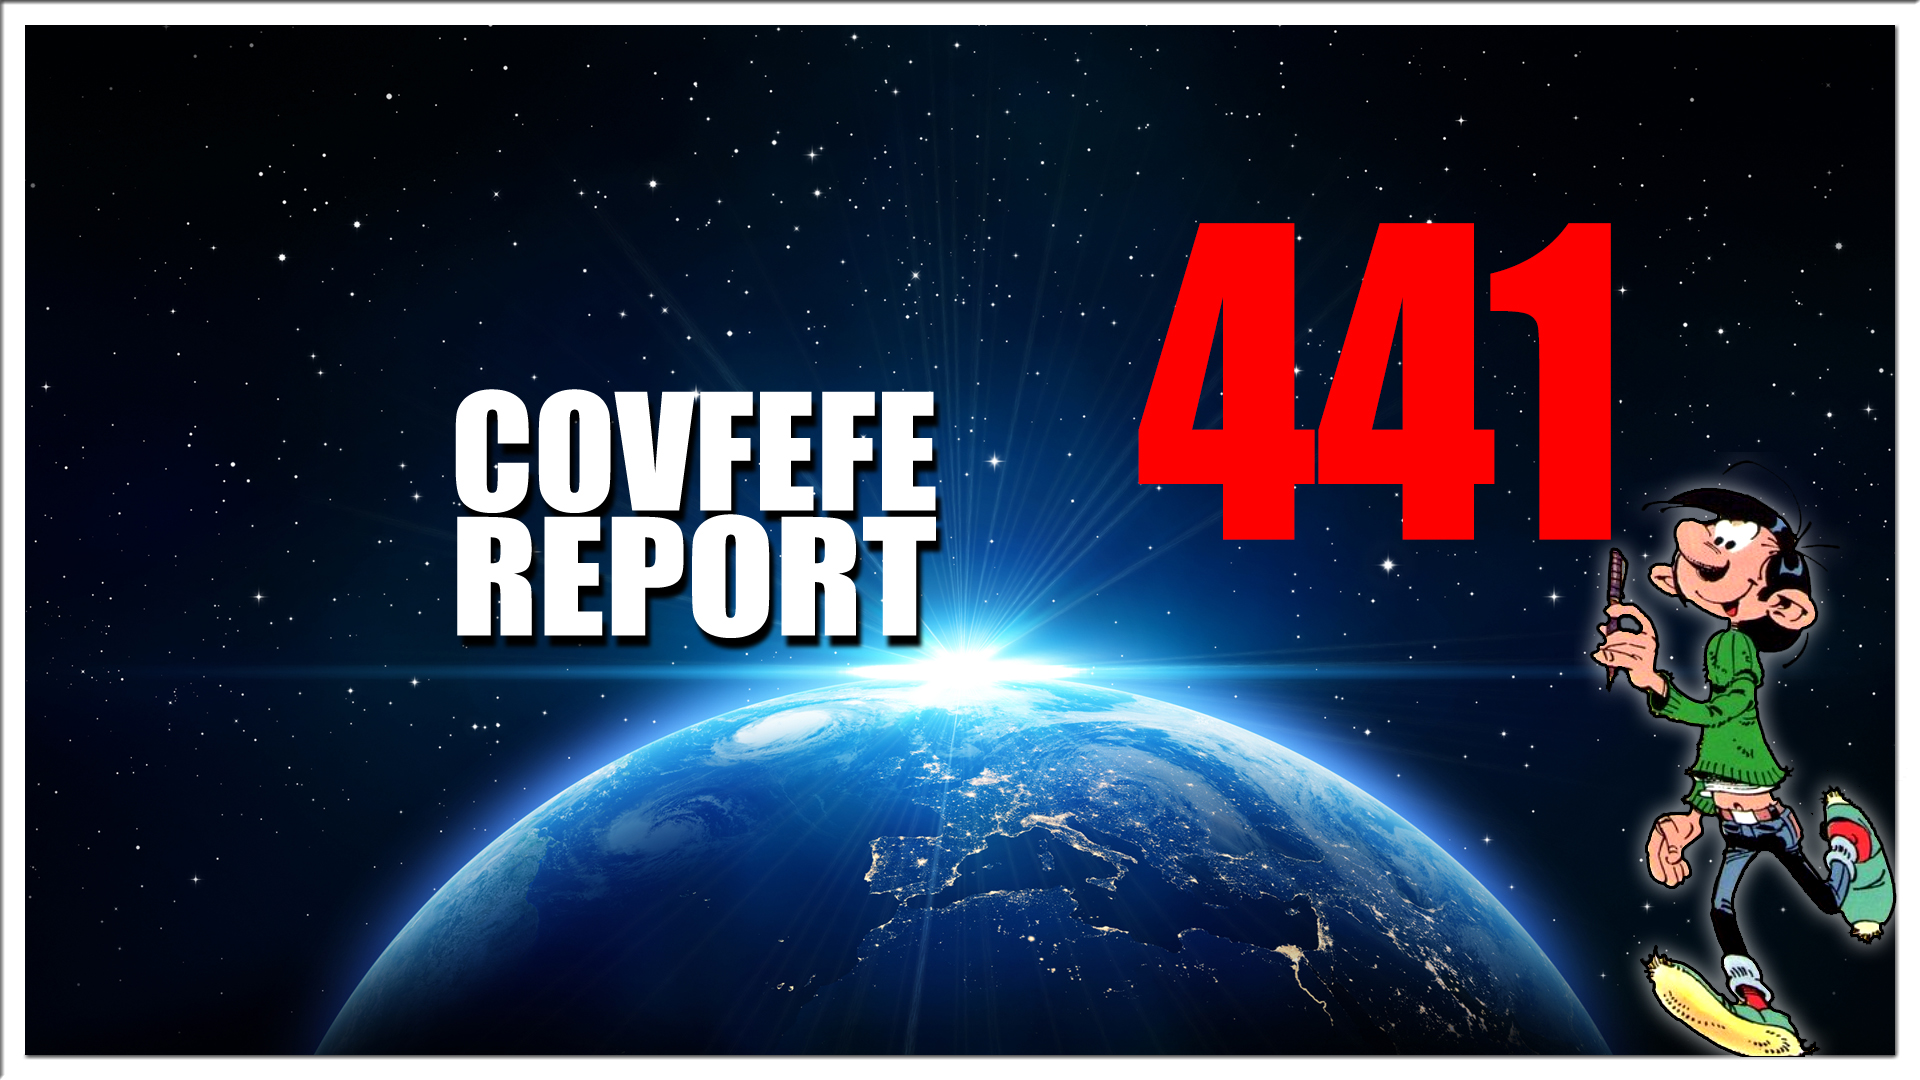 Covfefe Report 441. Patriots are in Control, Mars voor de vrijheid, Wij willen in vrijheid blijven dansen